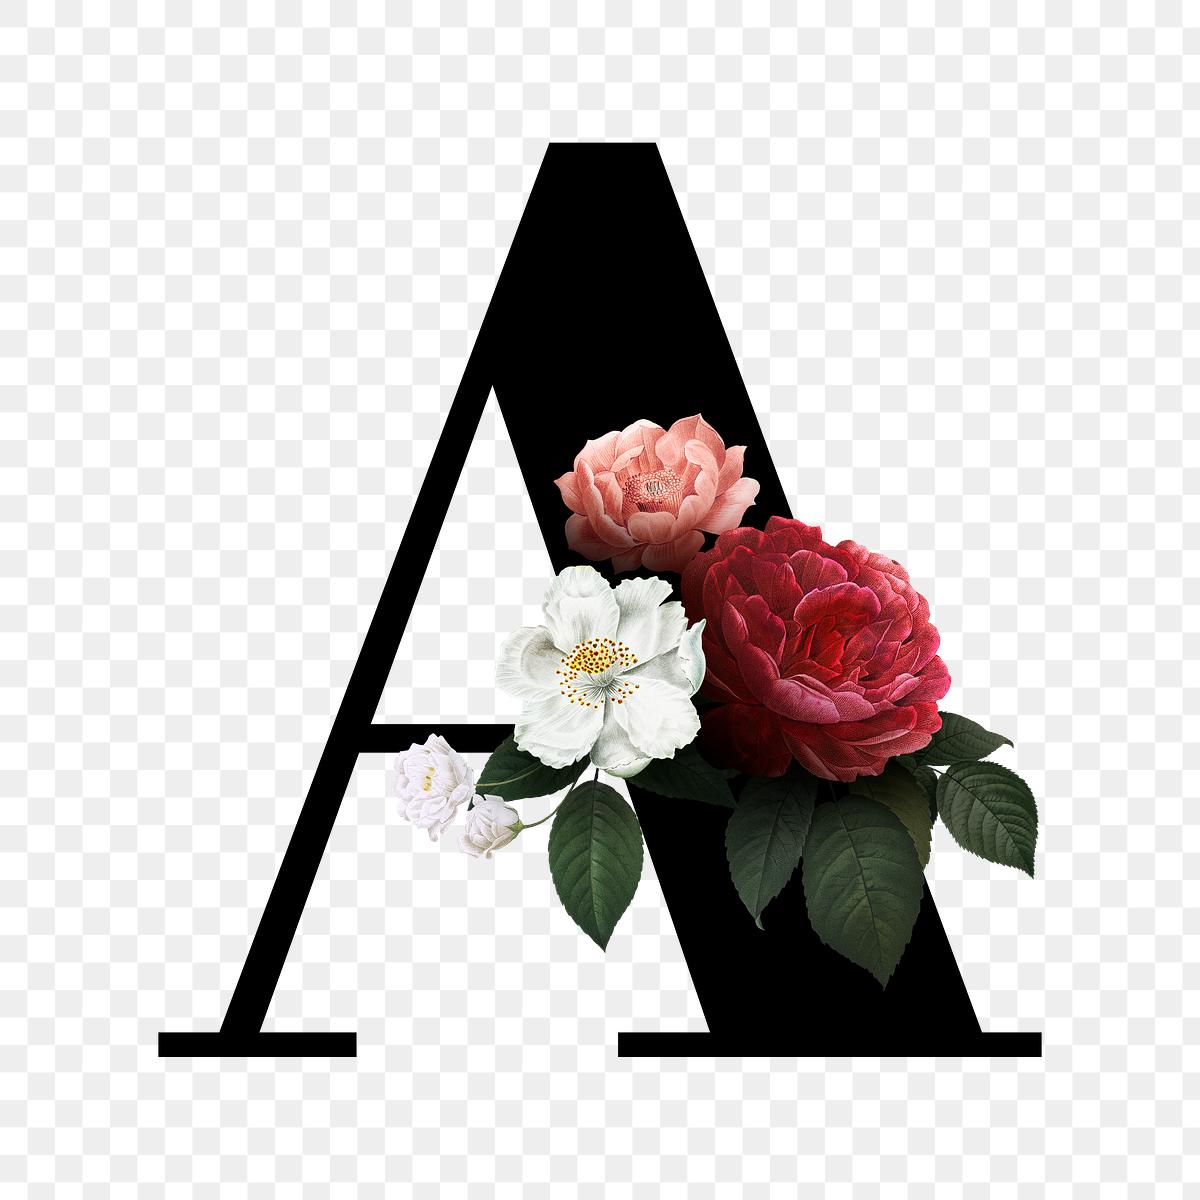 Download Floral letter A font | Free stock illustration - 582931